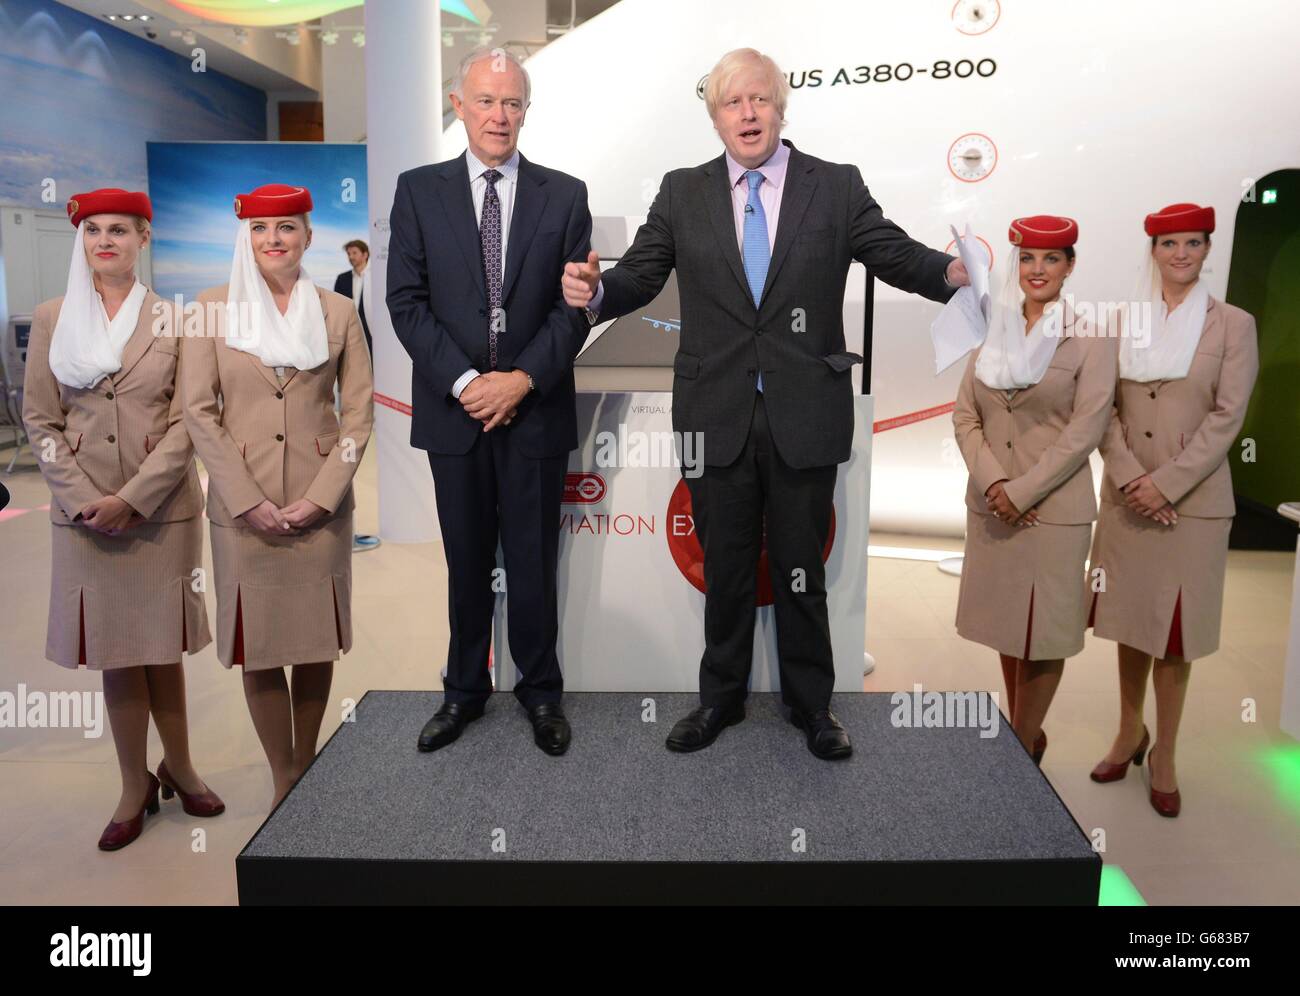 Il sindaco di Londra Boris Johnson e il presidente di Emirates Airlines Tim Clark al lancio dell'Emirates Aviation Experience a Greenwich oggi, dove i visitatori potranno sedersi ai comandi di un simulatore di volo Airbus A380. Foto Stock